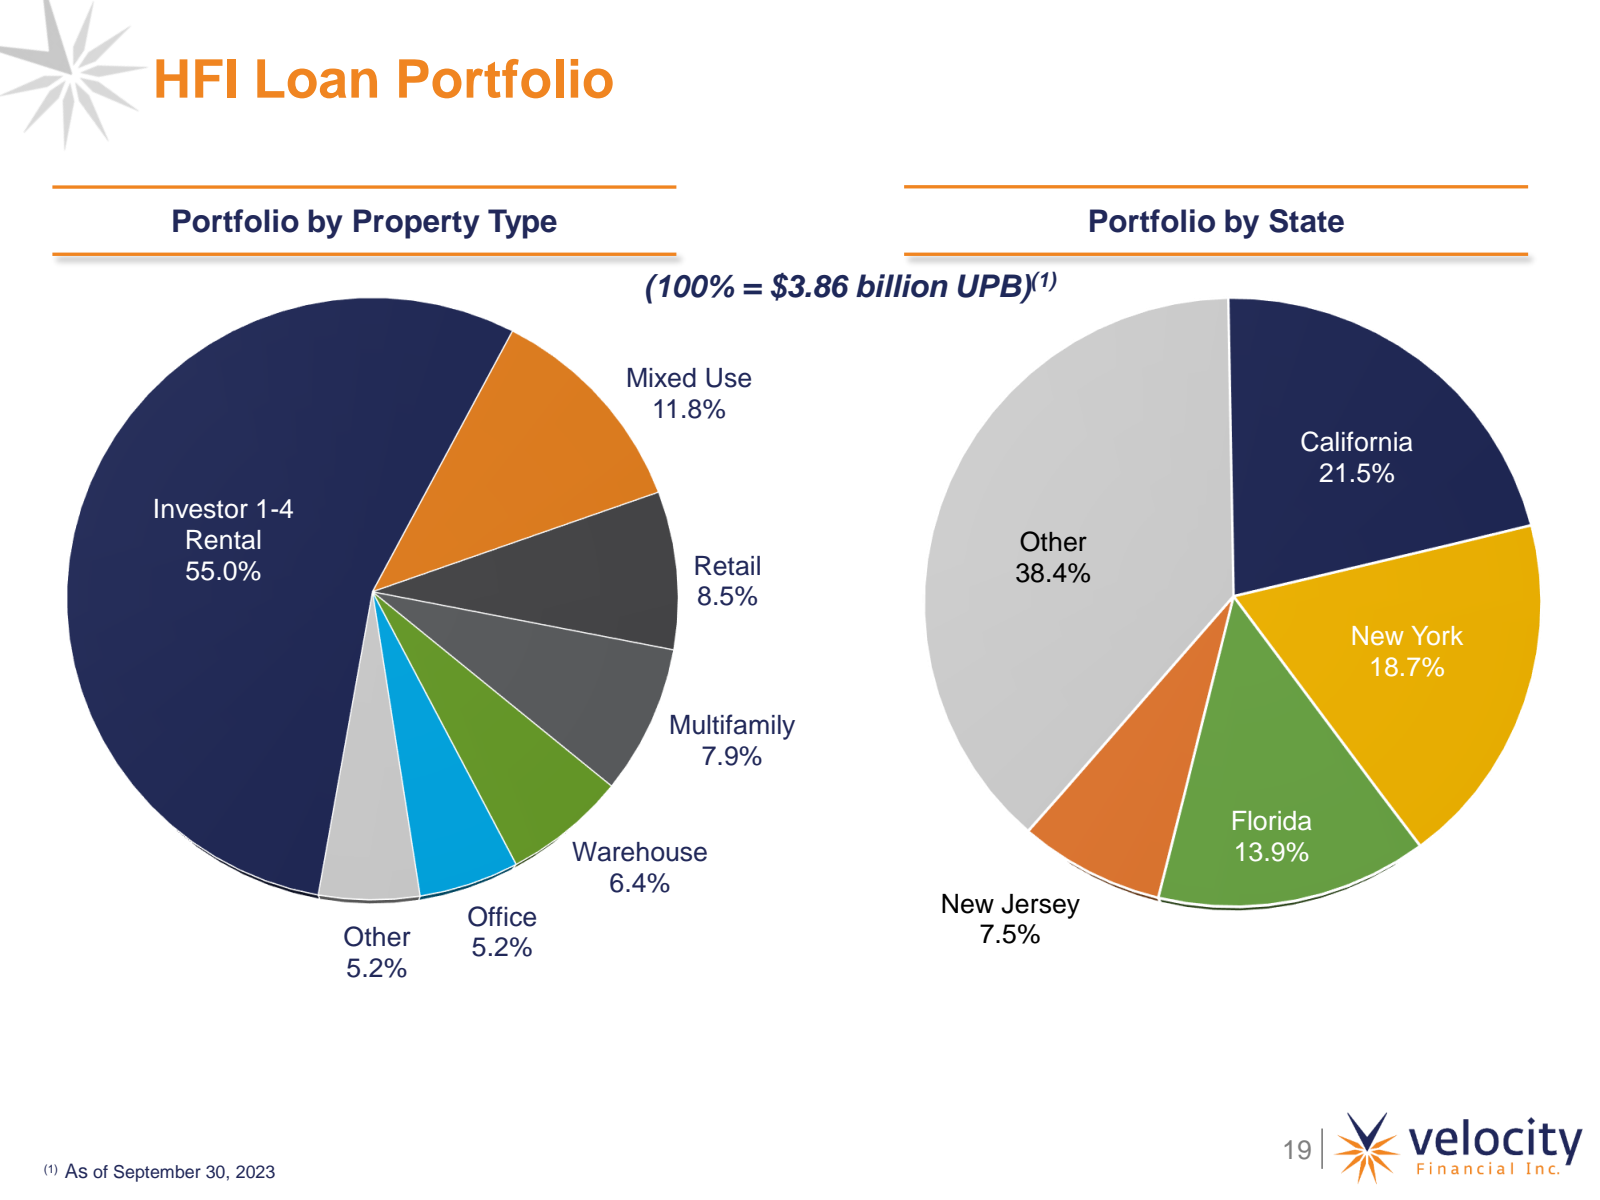 HFI Loan Portfolio 
